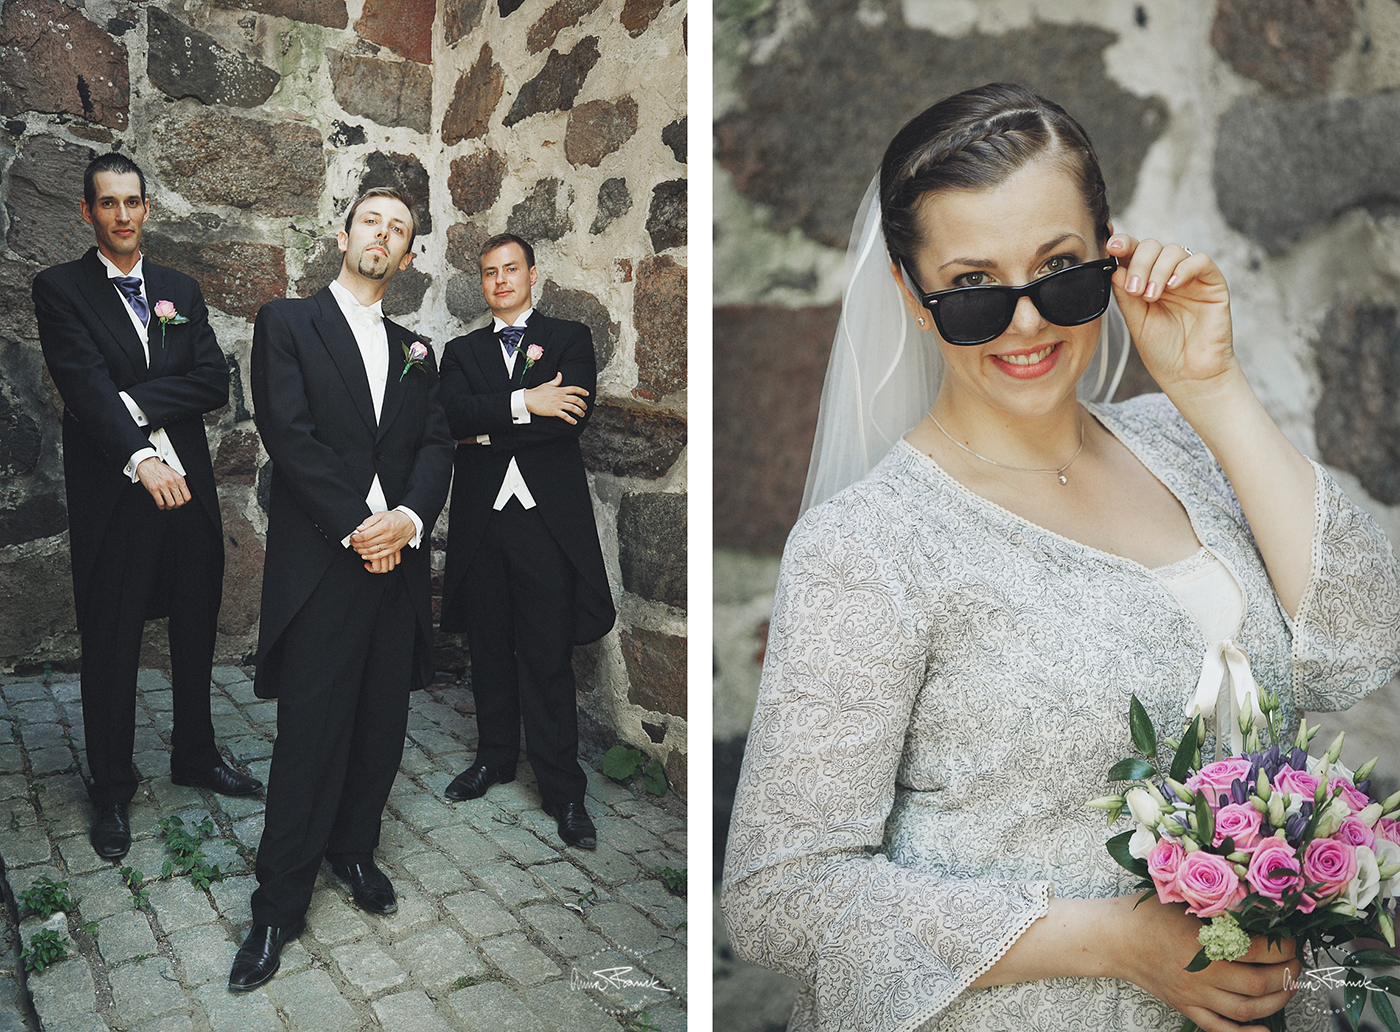 wedding, bröllop, häät, pargas, parainen, finland, suomi, hääkuvaus, bröllopsfotografering, anna, franck, porträtt, cool, annorlunda, unikt, ainutlaatuinen, stockholm, fotograf, kyrka, bukett